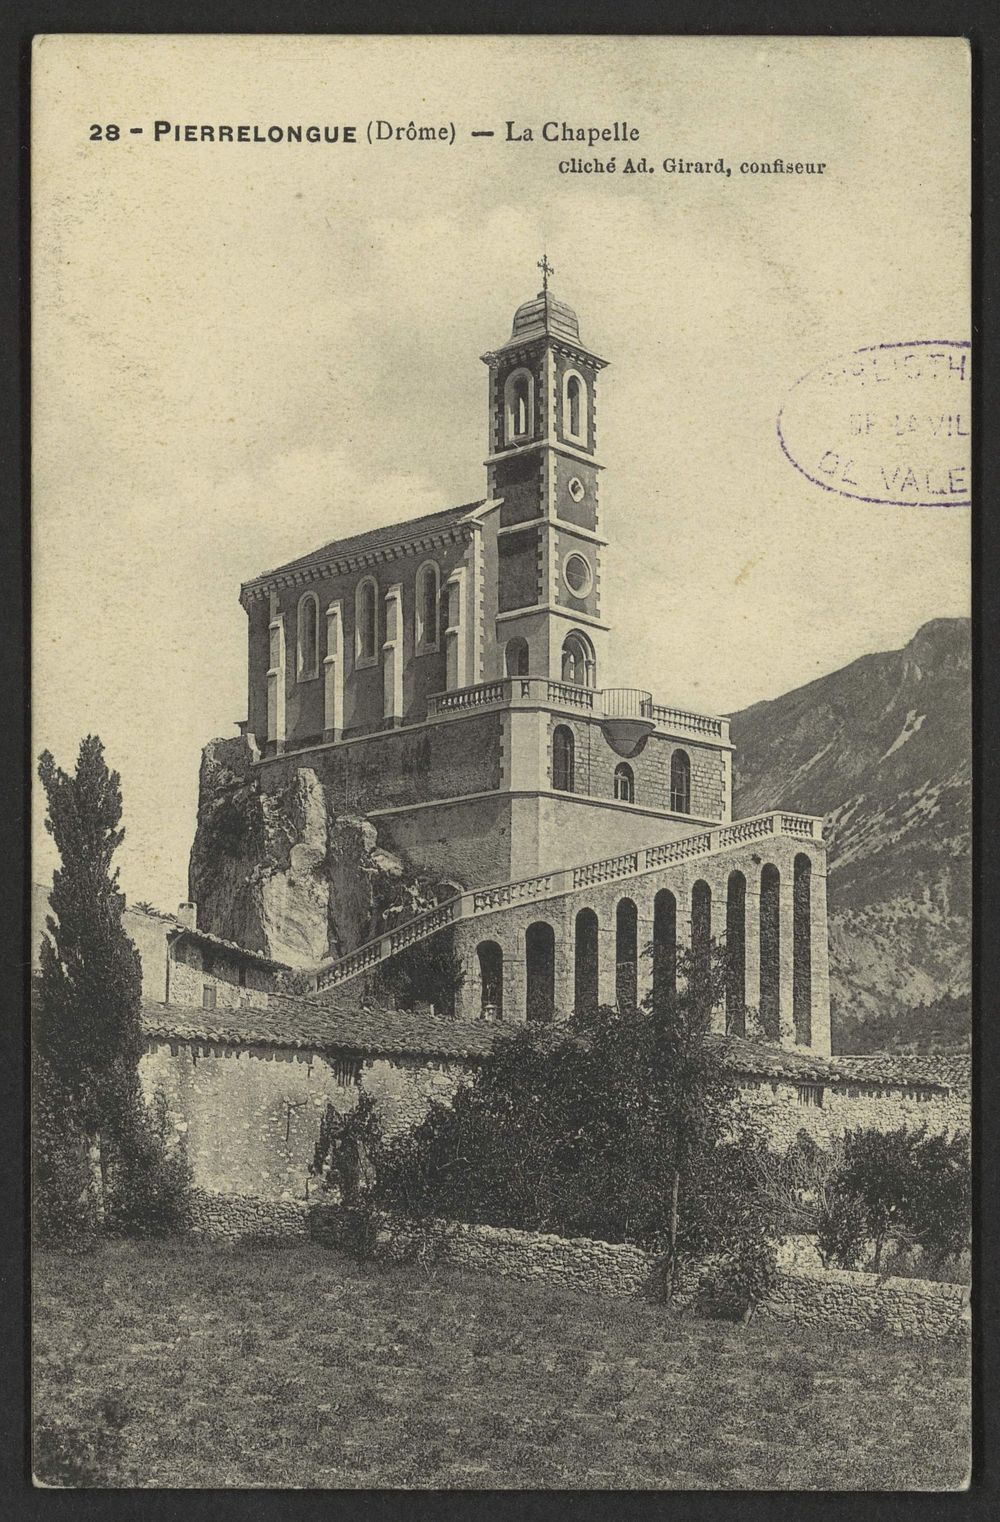 Pierrelongue (Drôme) - La chapelle